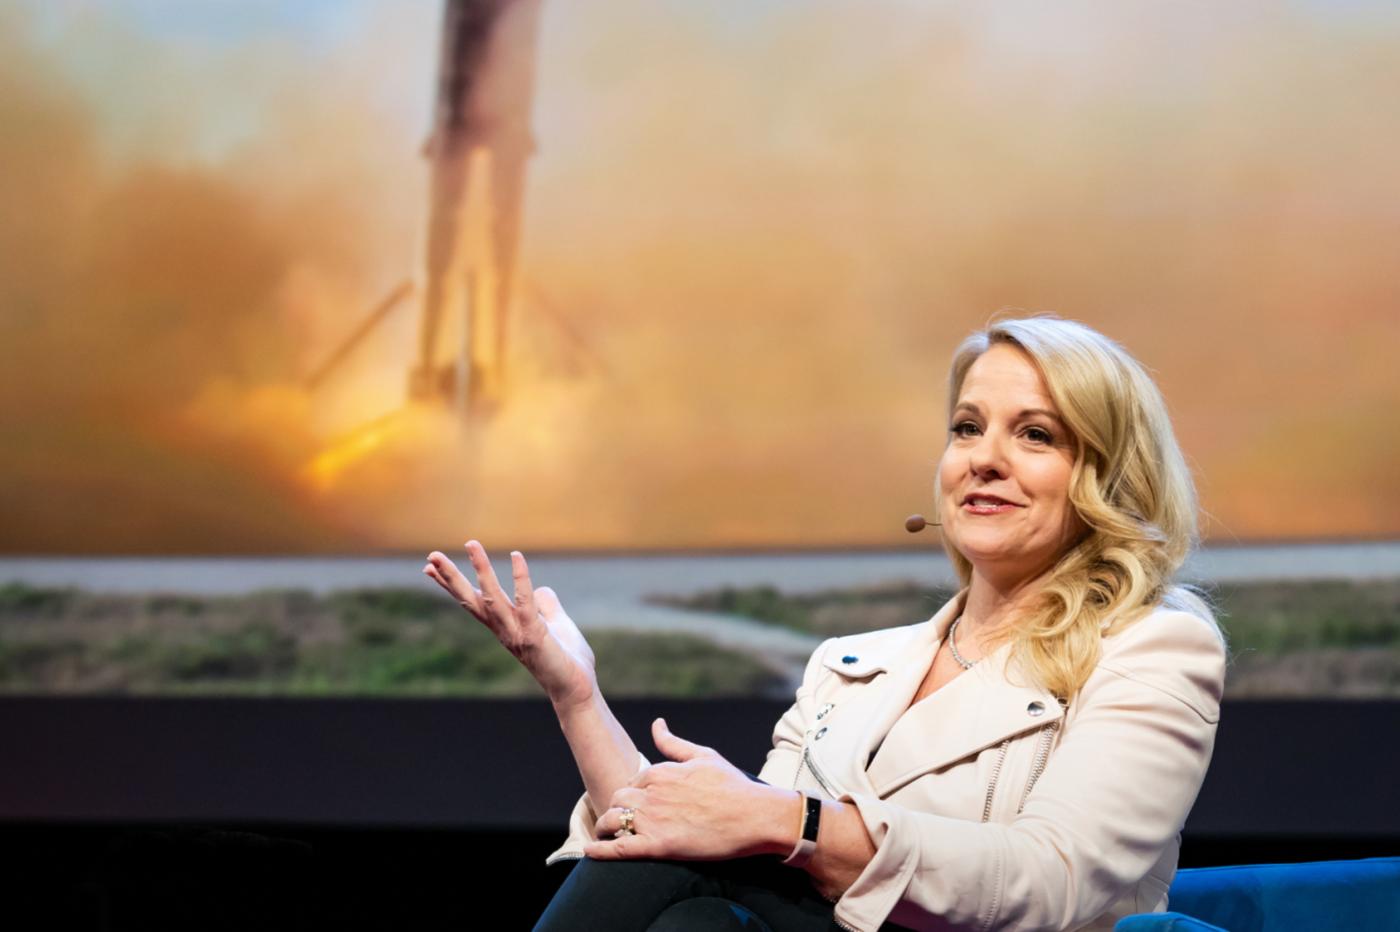 Gwynne Shotwell numéro deux de SpaceX lors d'une conférence TED